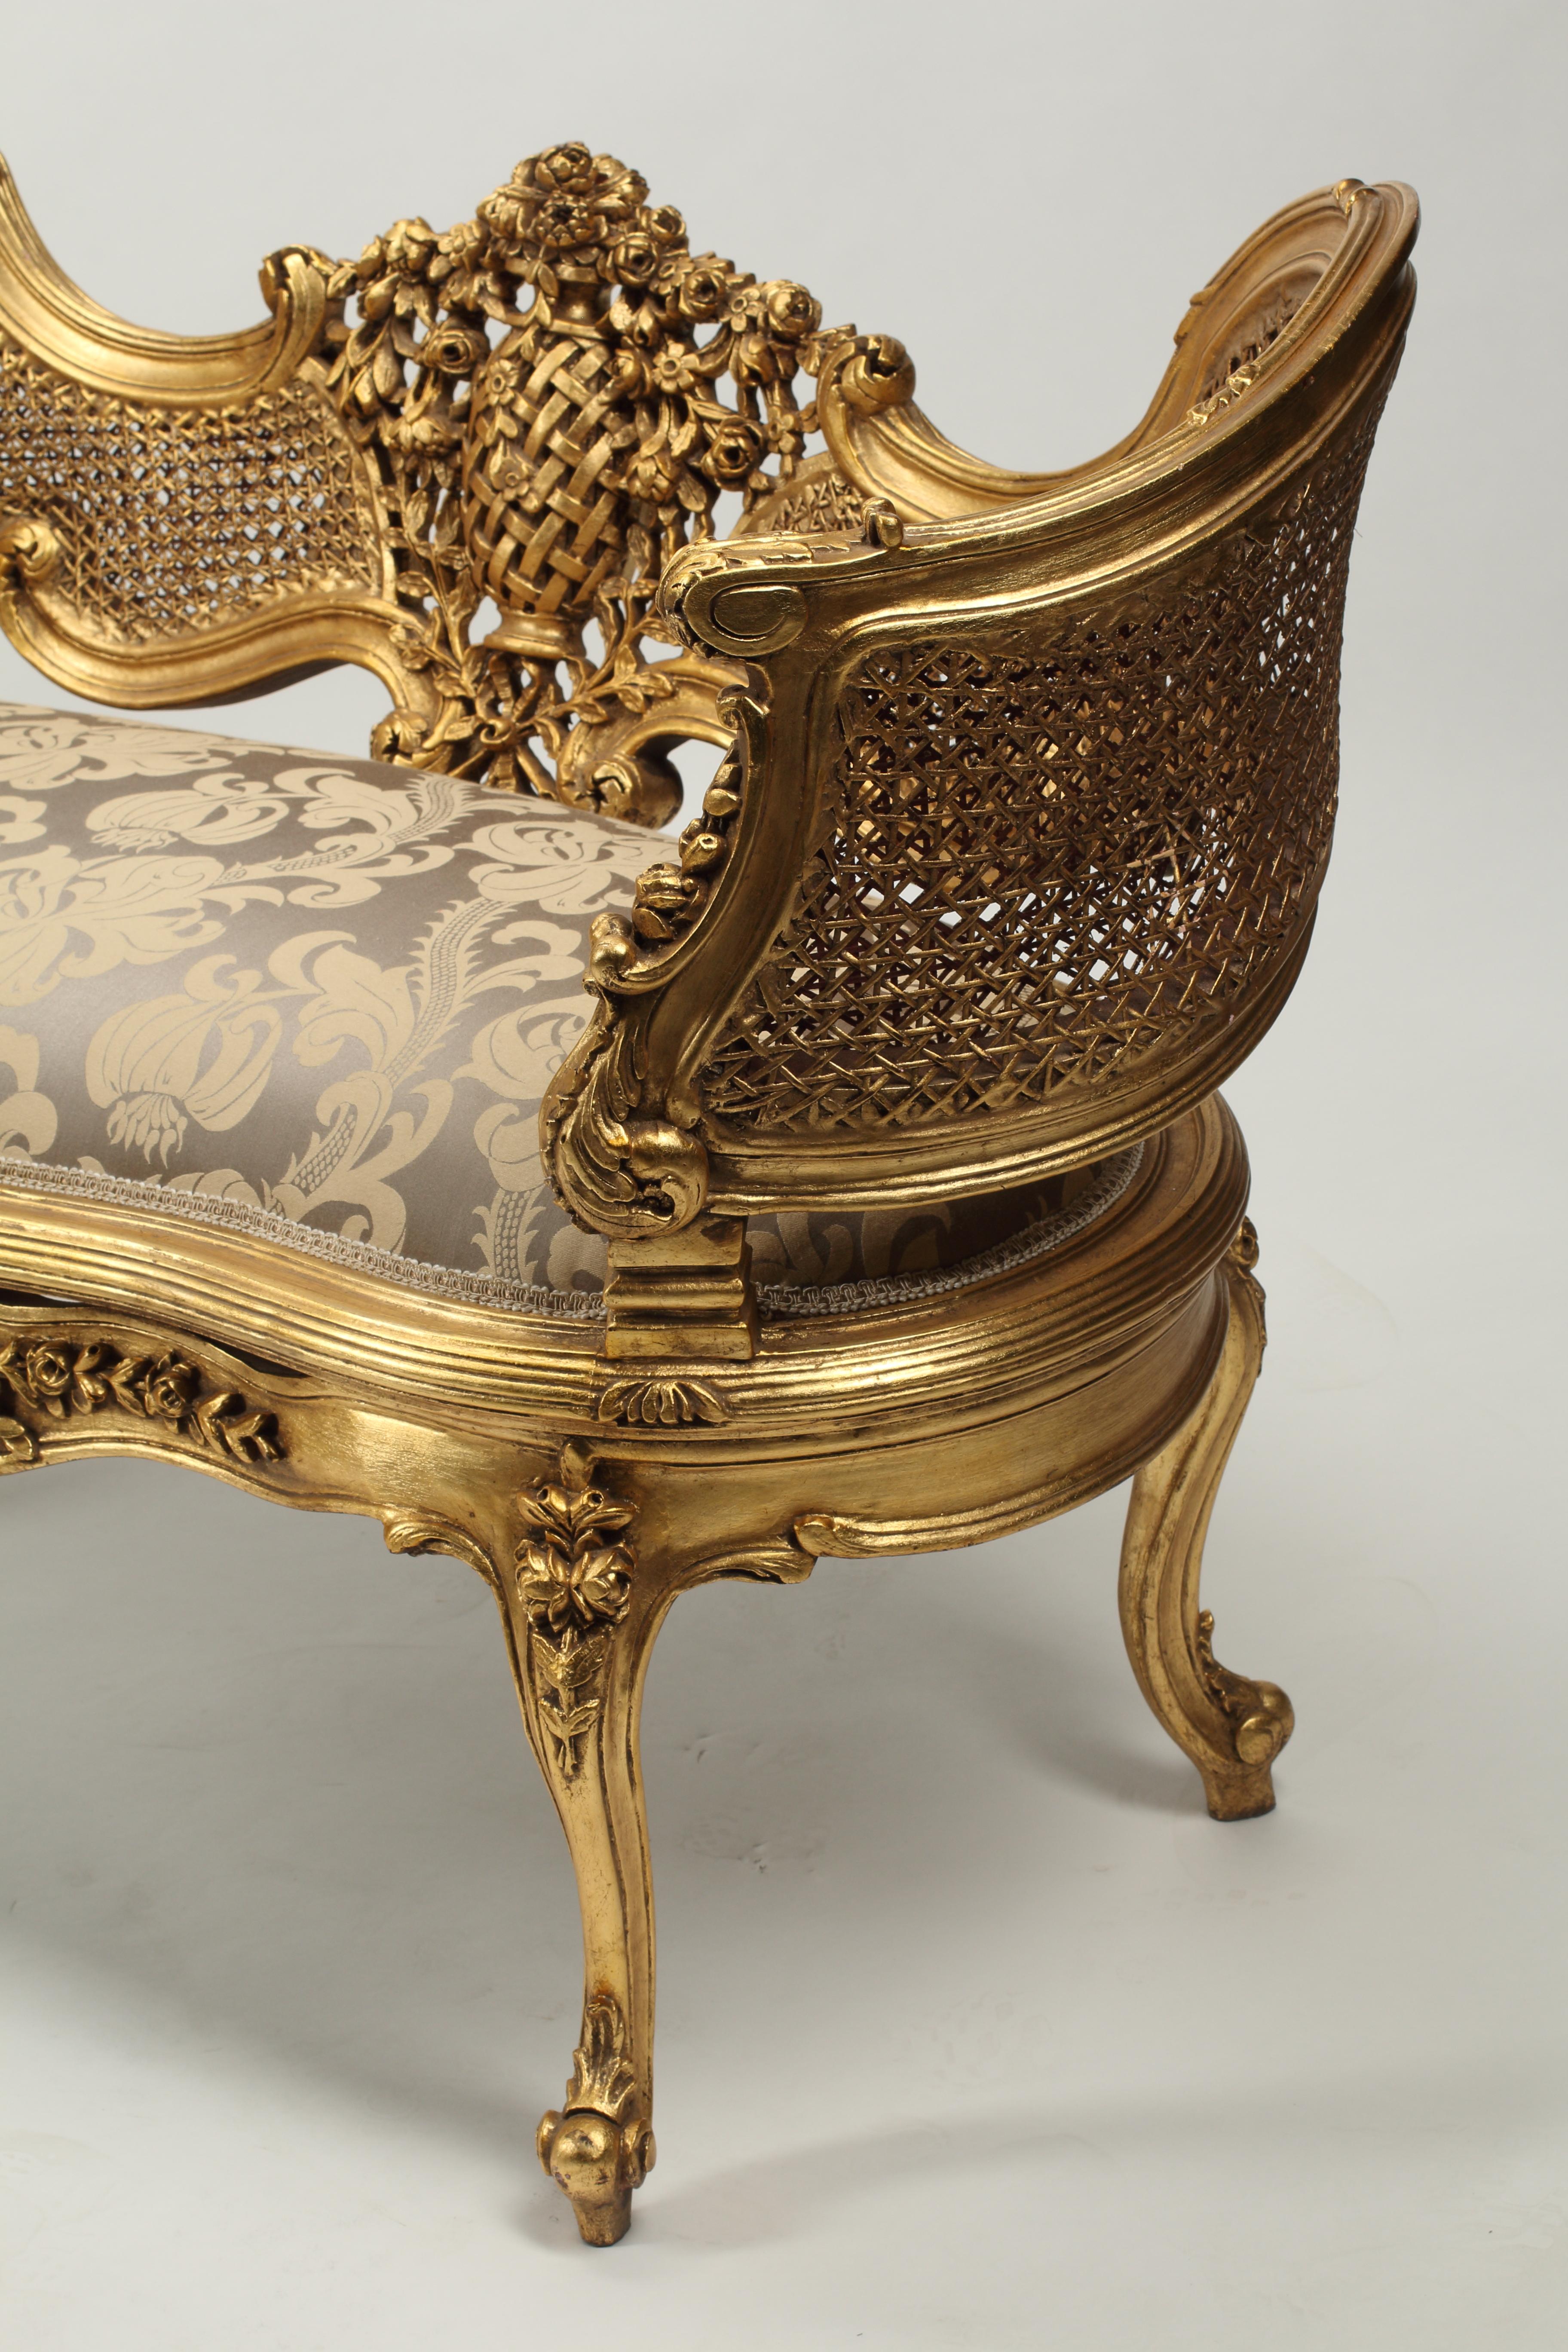 Ein hübsches Paar gepolsterter Sofas aus vergoldetem Holz im Stil Louis XV. Sitzlehnen und Armlehnen mit Schilfrohr. Hochdekorative Schnitzereien mit Blumen- und Laubmotiven auf dem Rahmen der Sofas. 
Neu gepolstert mit einem taupefarbenen und